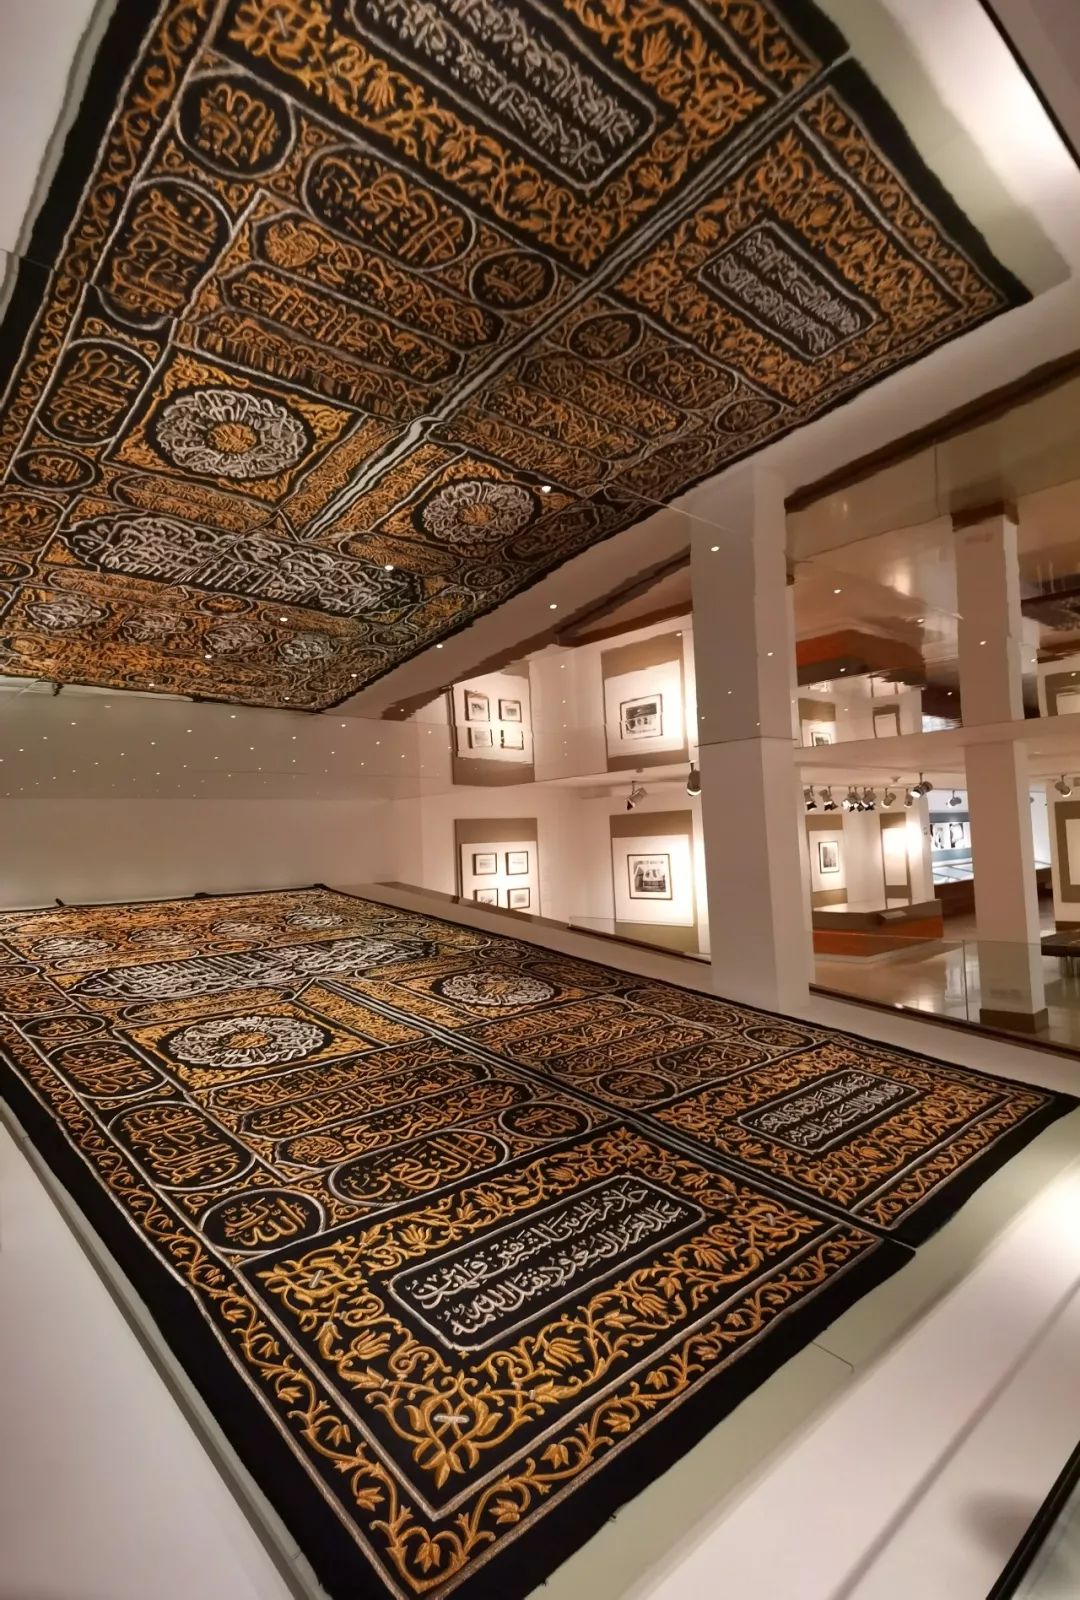 阿拉伯世界文化之都既有伊斯兰文化博物馆,也有网红雨屋,是矛盾还是